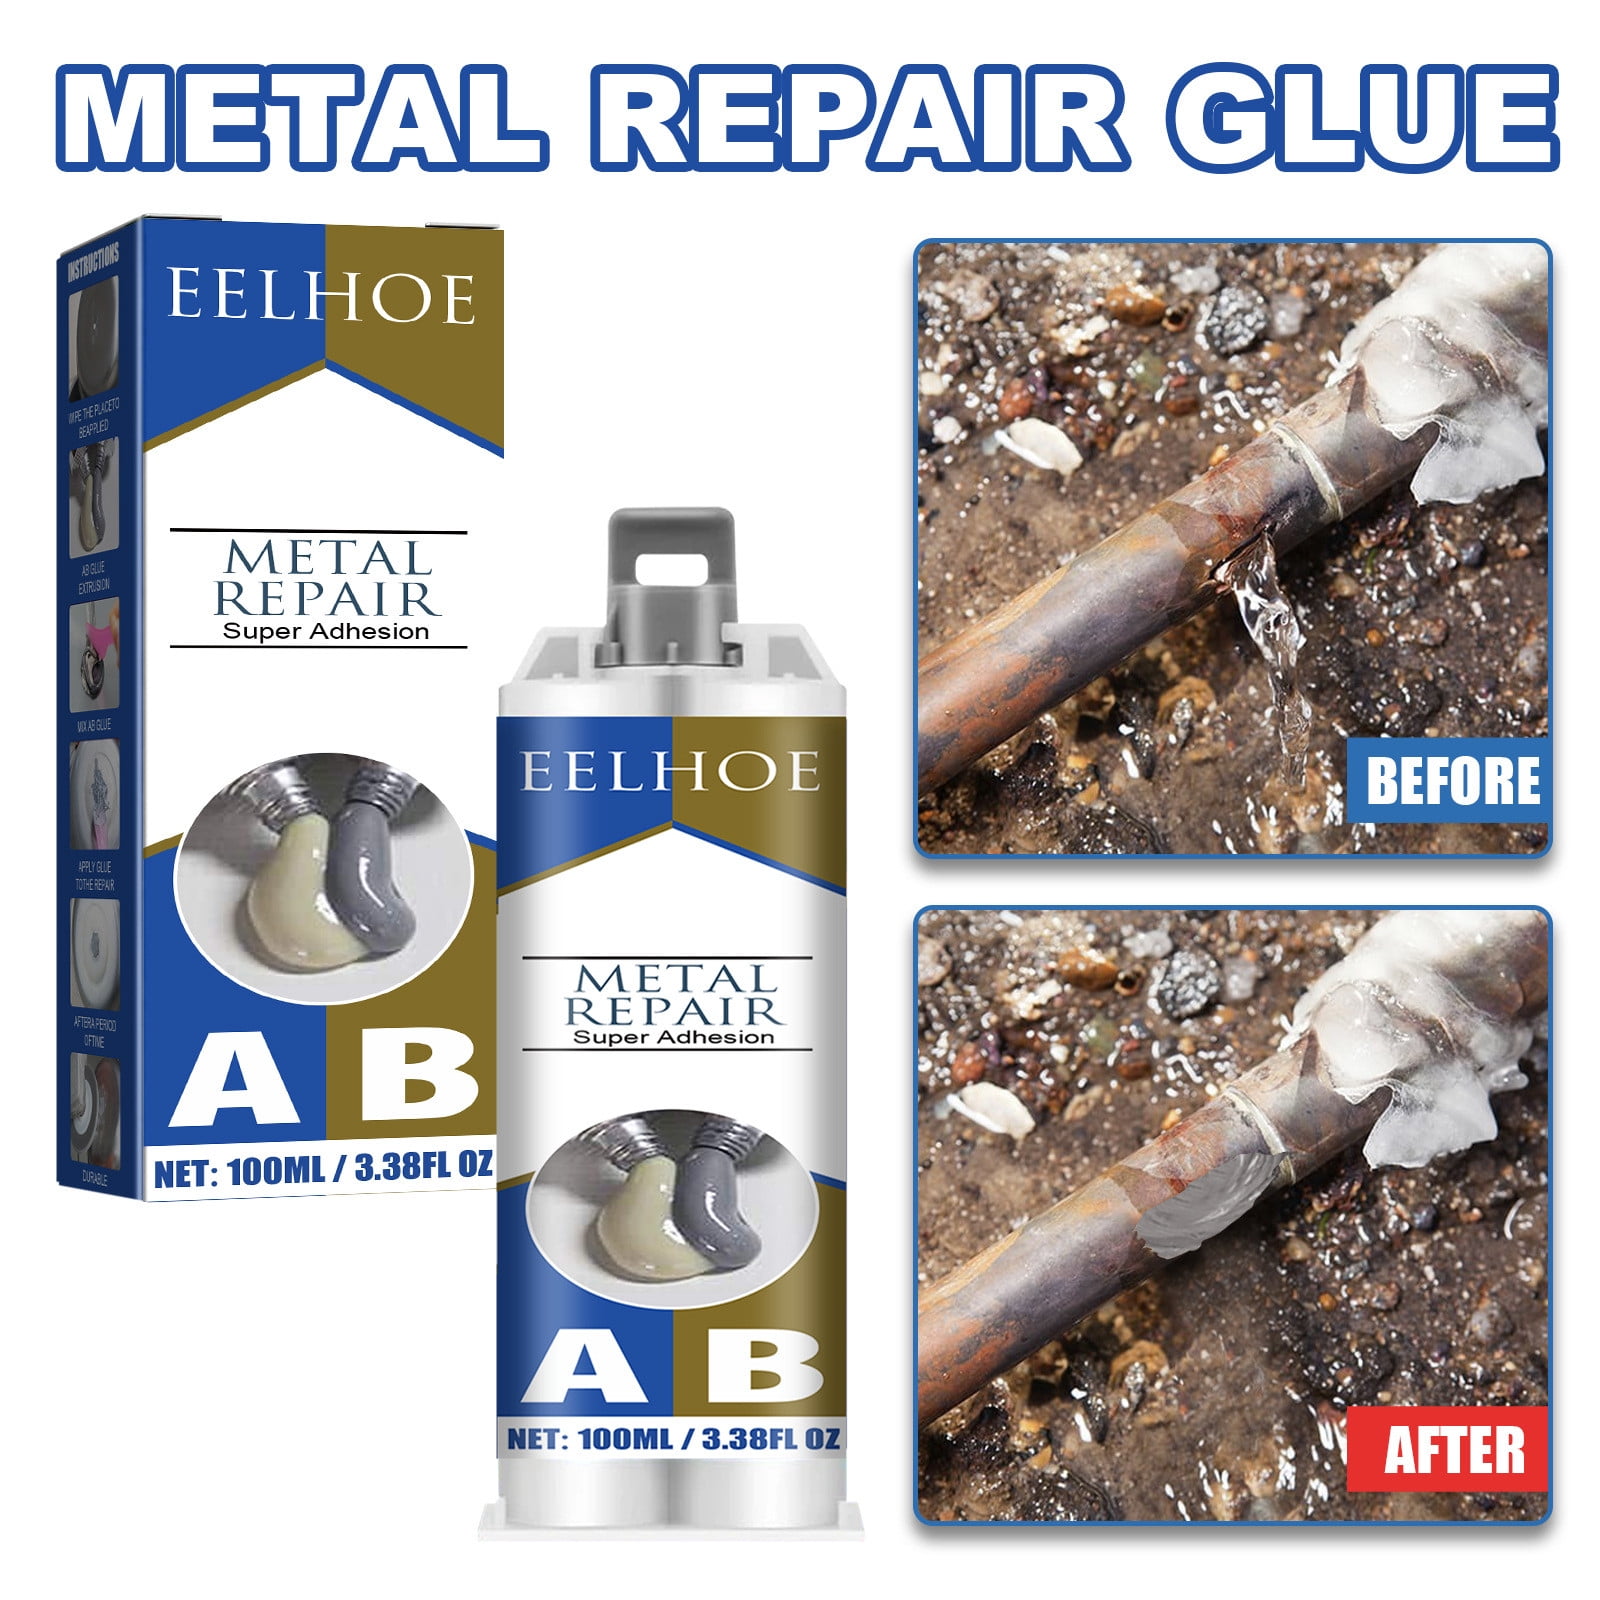 MOOK METALPRO Premium Metal Repair Gel Set of 2 Tubes, Industrial Heat  Resistance Cold Weld Metal Repair Paste, Welding Glue Plastic Cement Weld  Glue